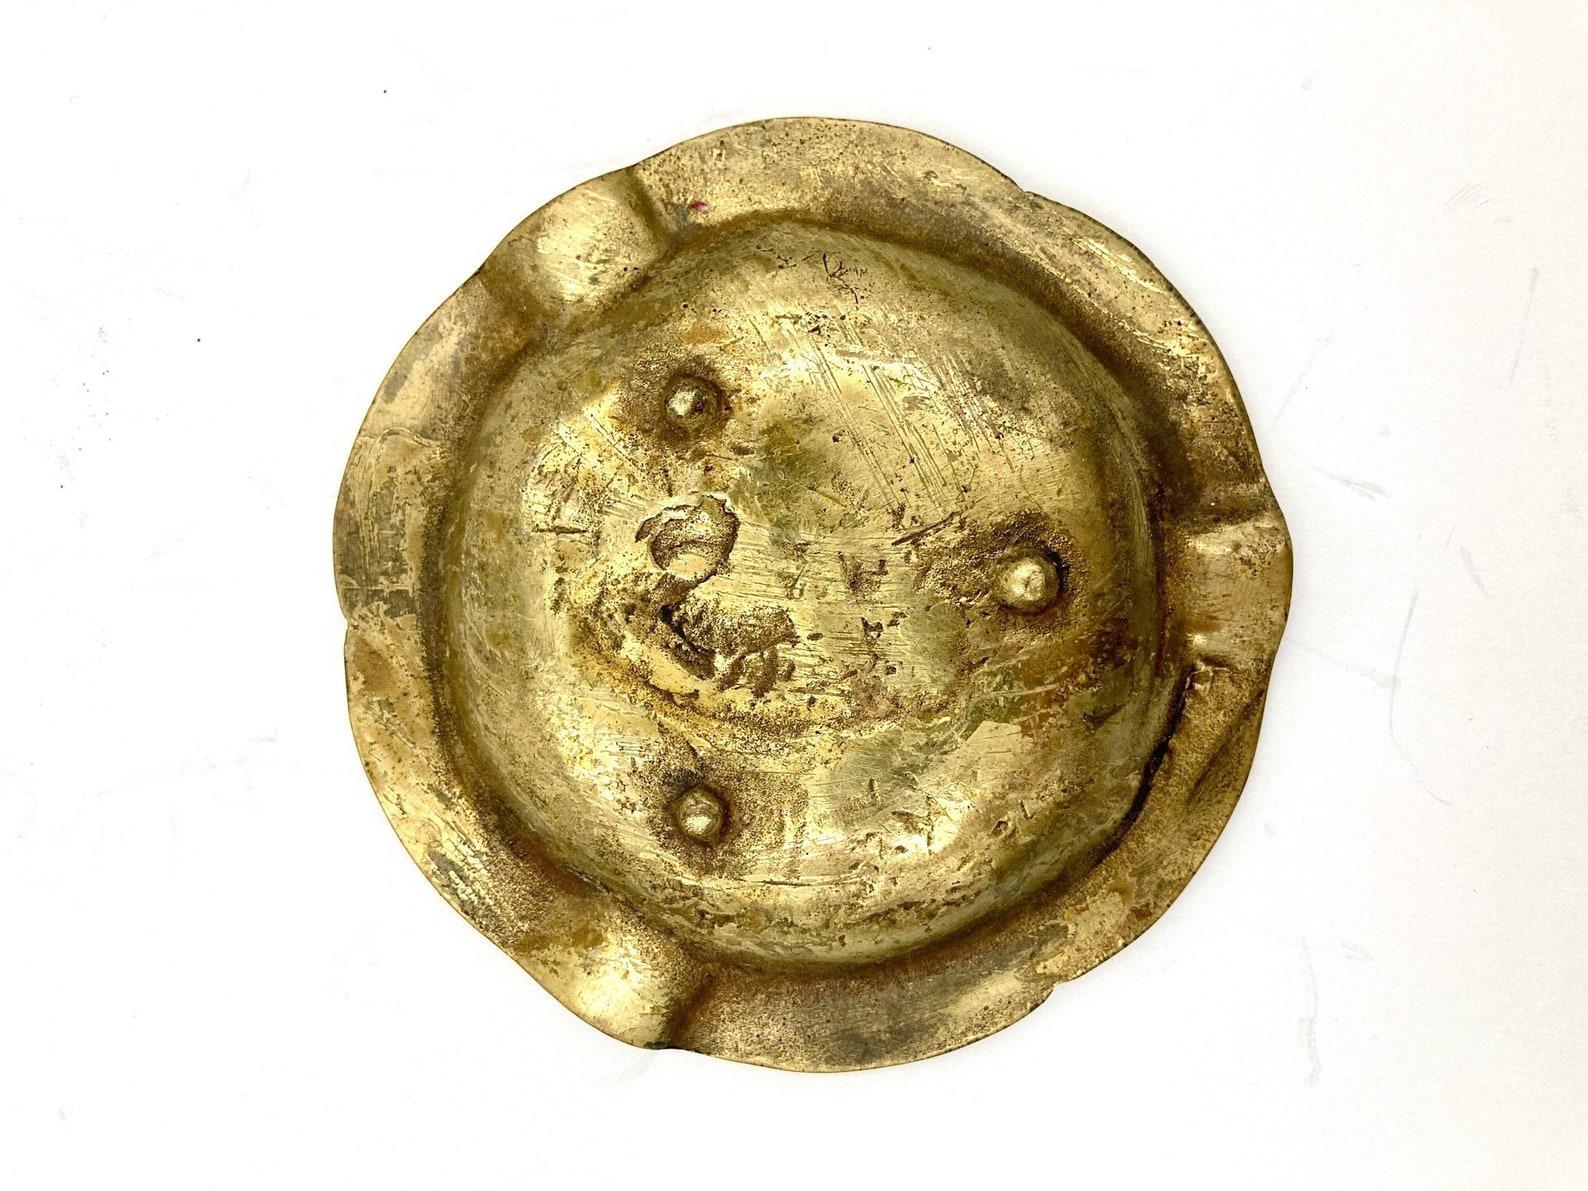 Aschenbecher aus antiker Bronze mit Patina. Eine sehr interessante Sache für Sammler. 

Durchmesser: 4,3 Zoll  10 cm.

Weltweite Lieferung aus Belgien.

 Ich habe eine Menge Bilder zur Verfügung gestellt, um den Zustand dieses Artikels bestmöglich